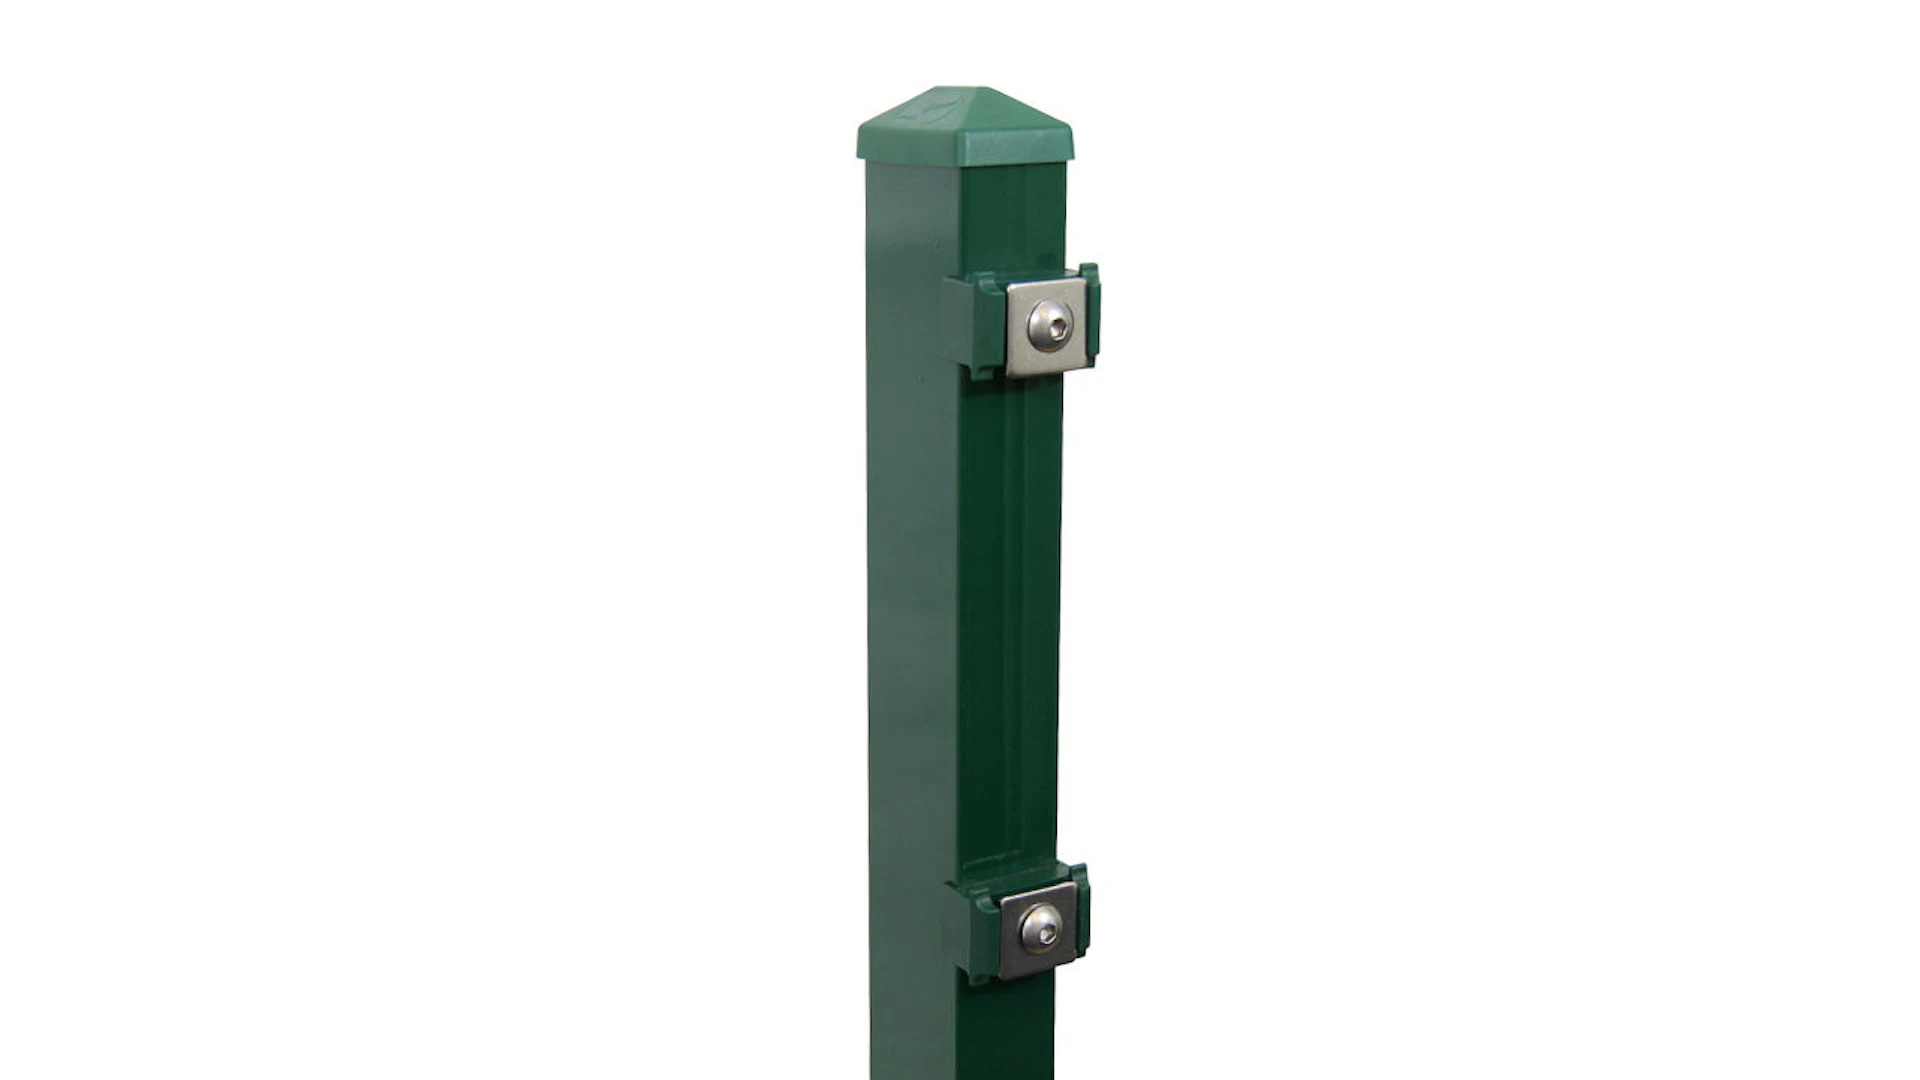 Poteau de clôture de type P vert mousse pour clôture à double maille - hauteur de la clôture 2430 mm